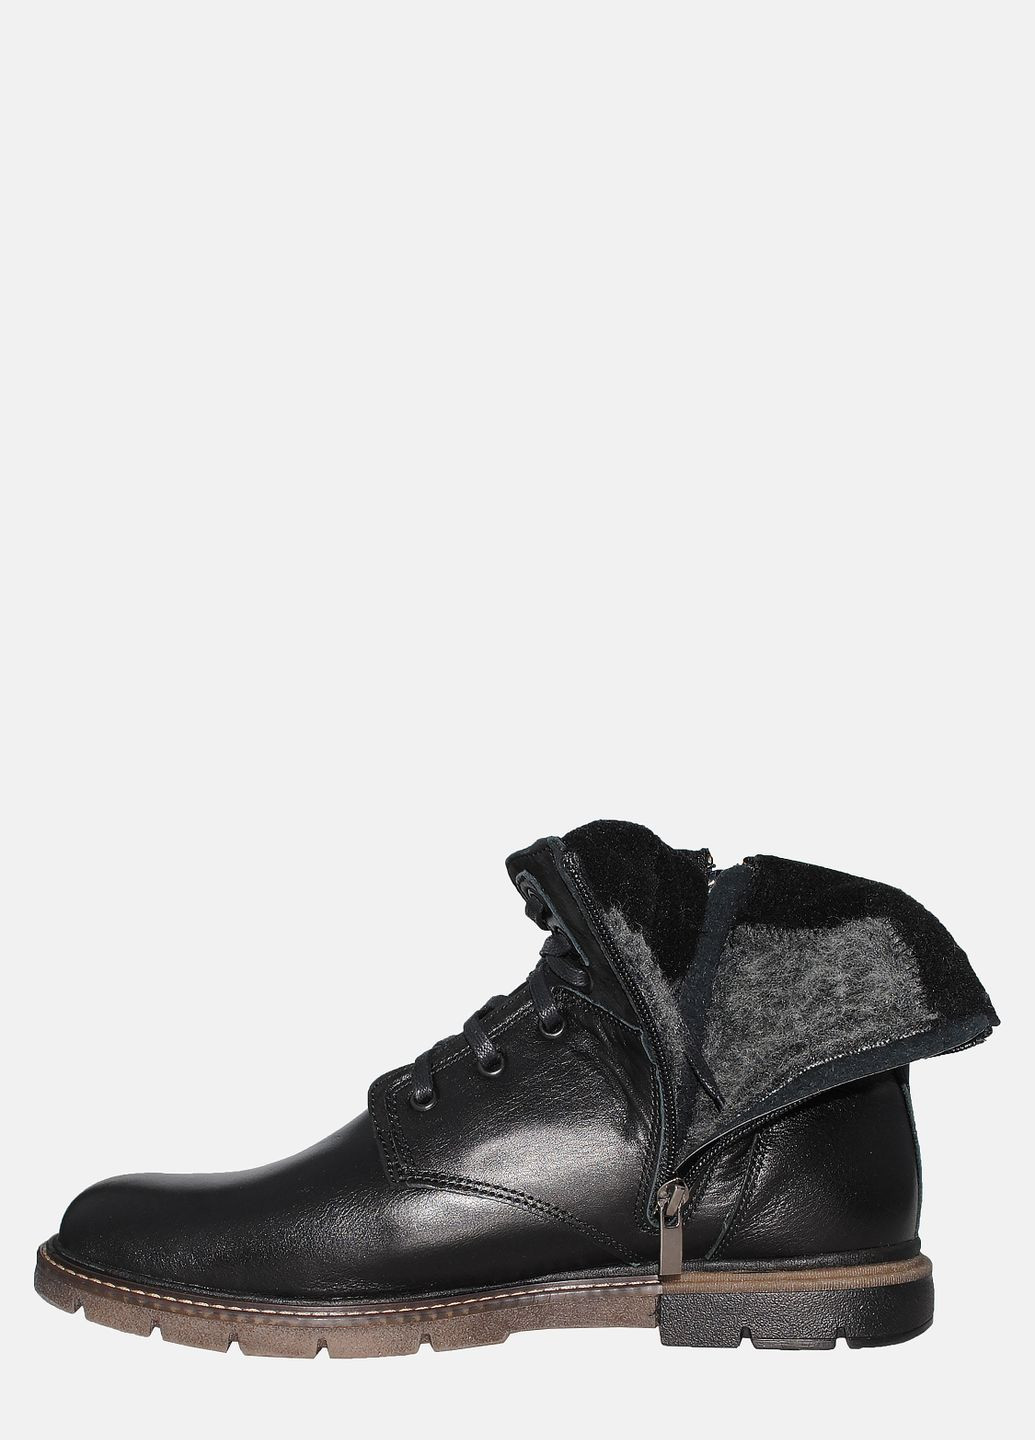 Черные зимние ботинки n5чт черный Morichetti